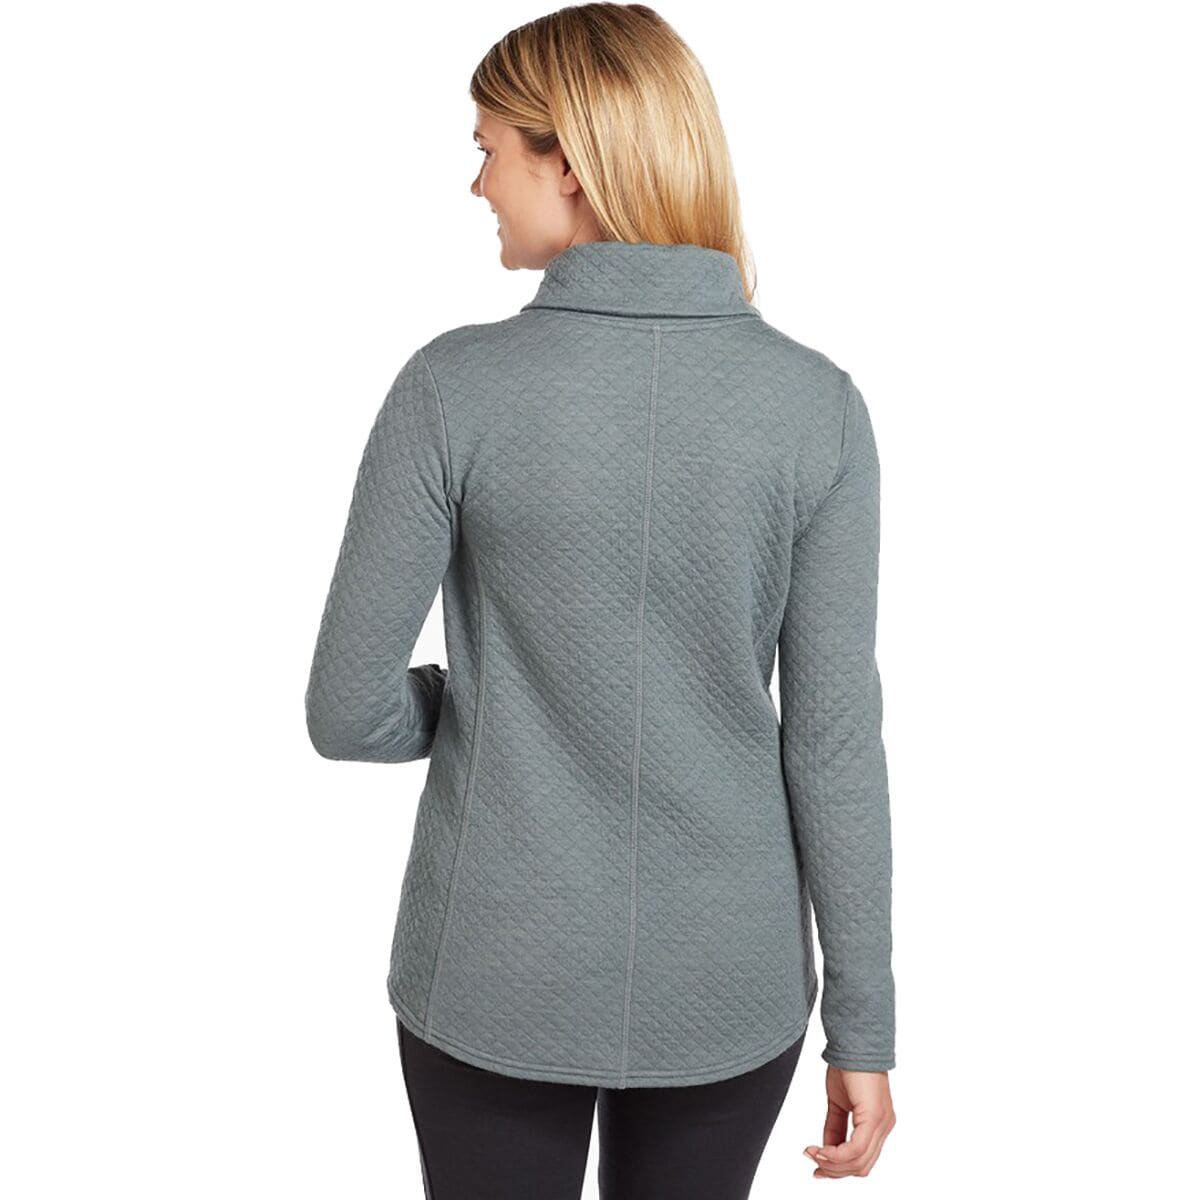 KUHL Athena Pullover Sweatshirt - Women's - Clothing